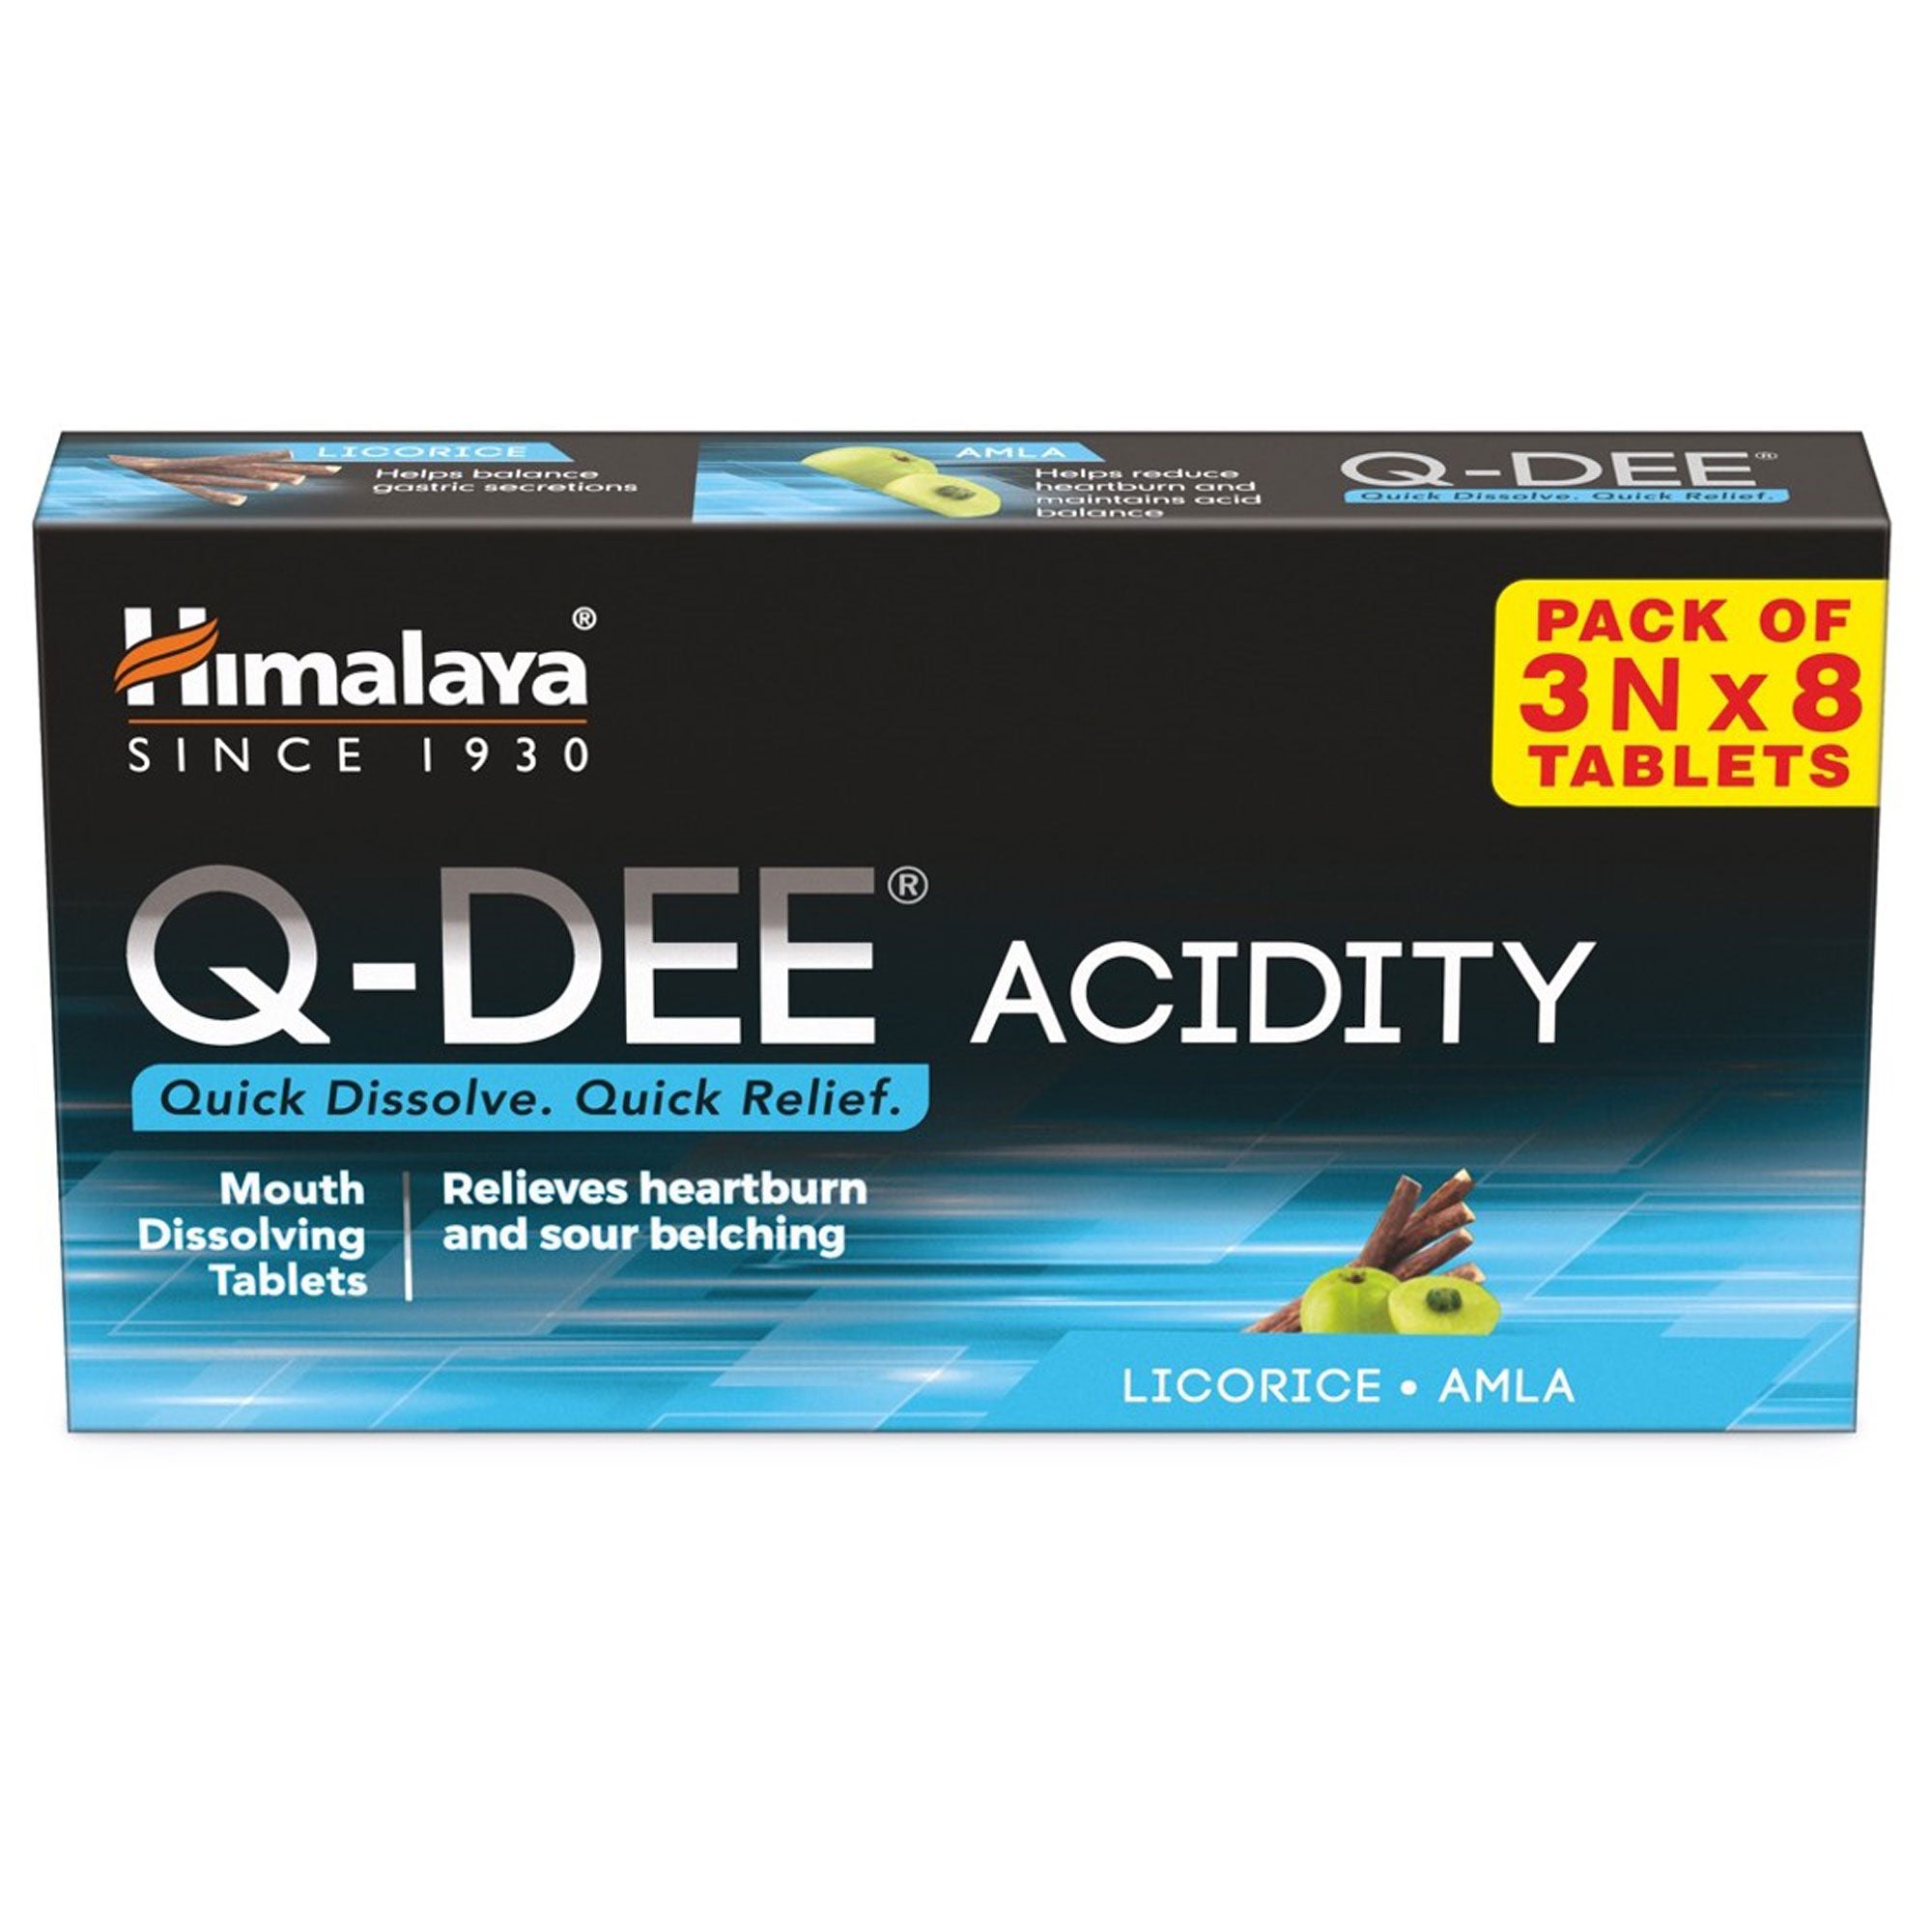 Himalaya Q-DEE Acidity Tablets - 3Nx8